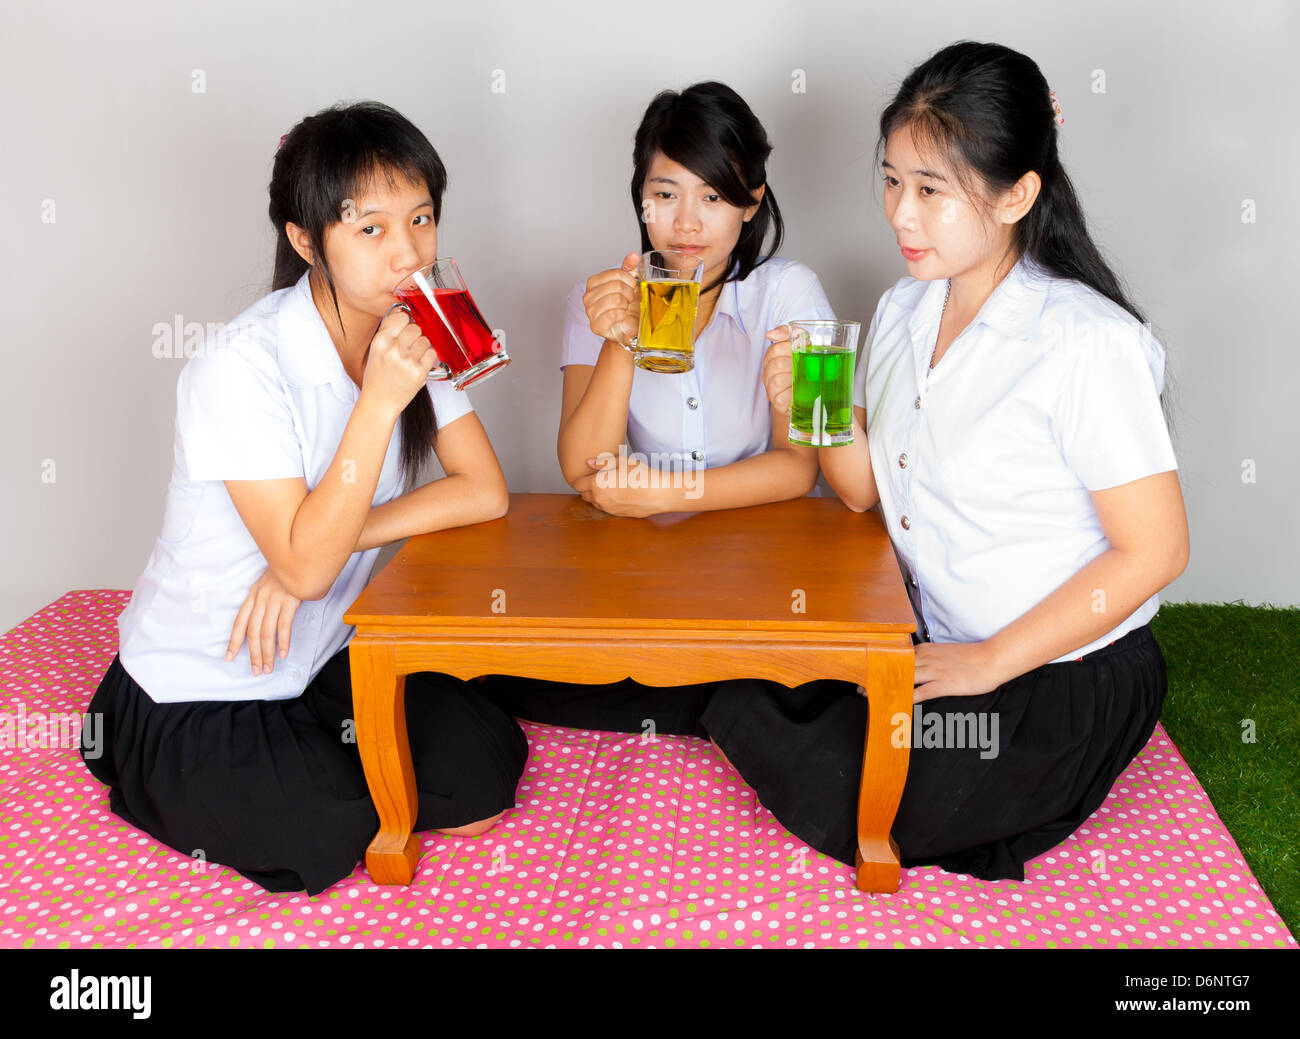 Les étudiants thaïlandais asiatique coloré de soude potable Banque D'Images